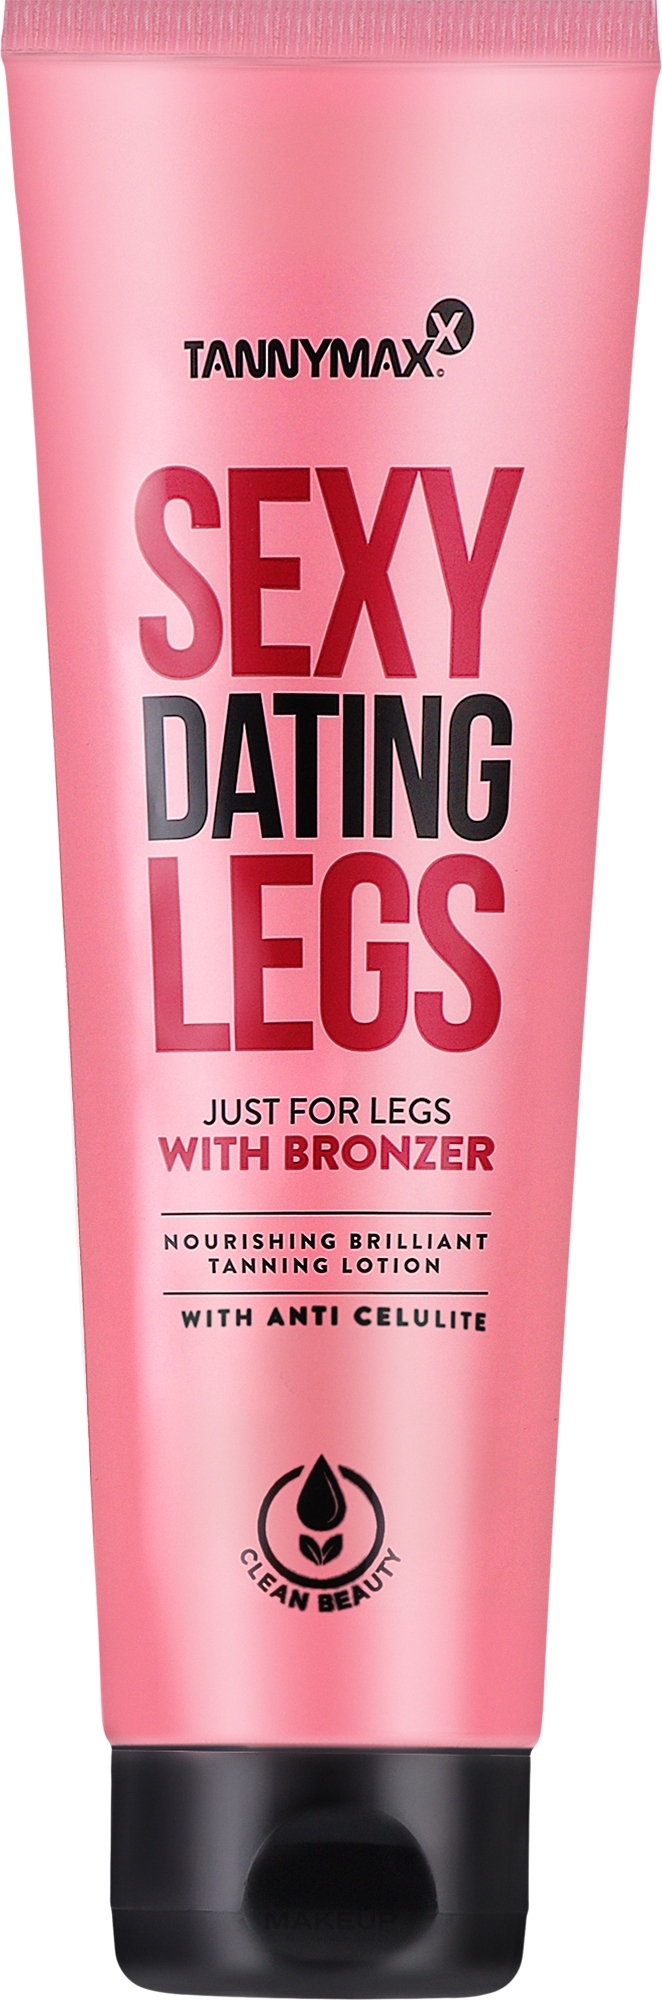 Живильний лосьйон для засмаги ніг, з антицелюлітним ефектом - Tannymaxx Sexy Dating Legs With Bronzer Anti-Celulite Very Dark Tanning + Bronzer — фото 150ml